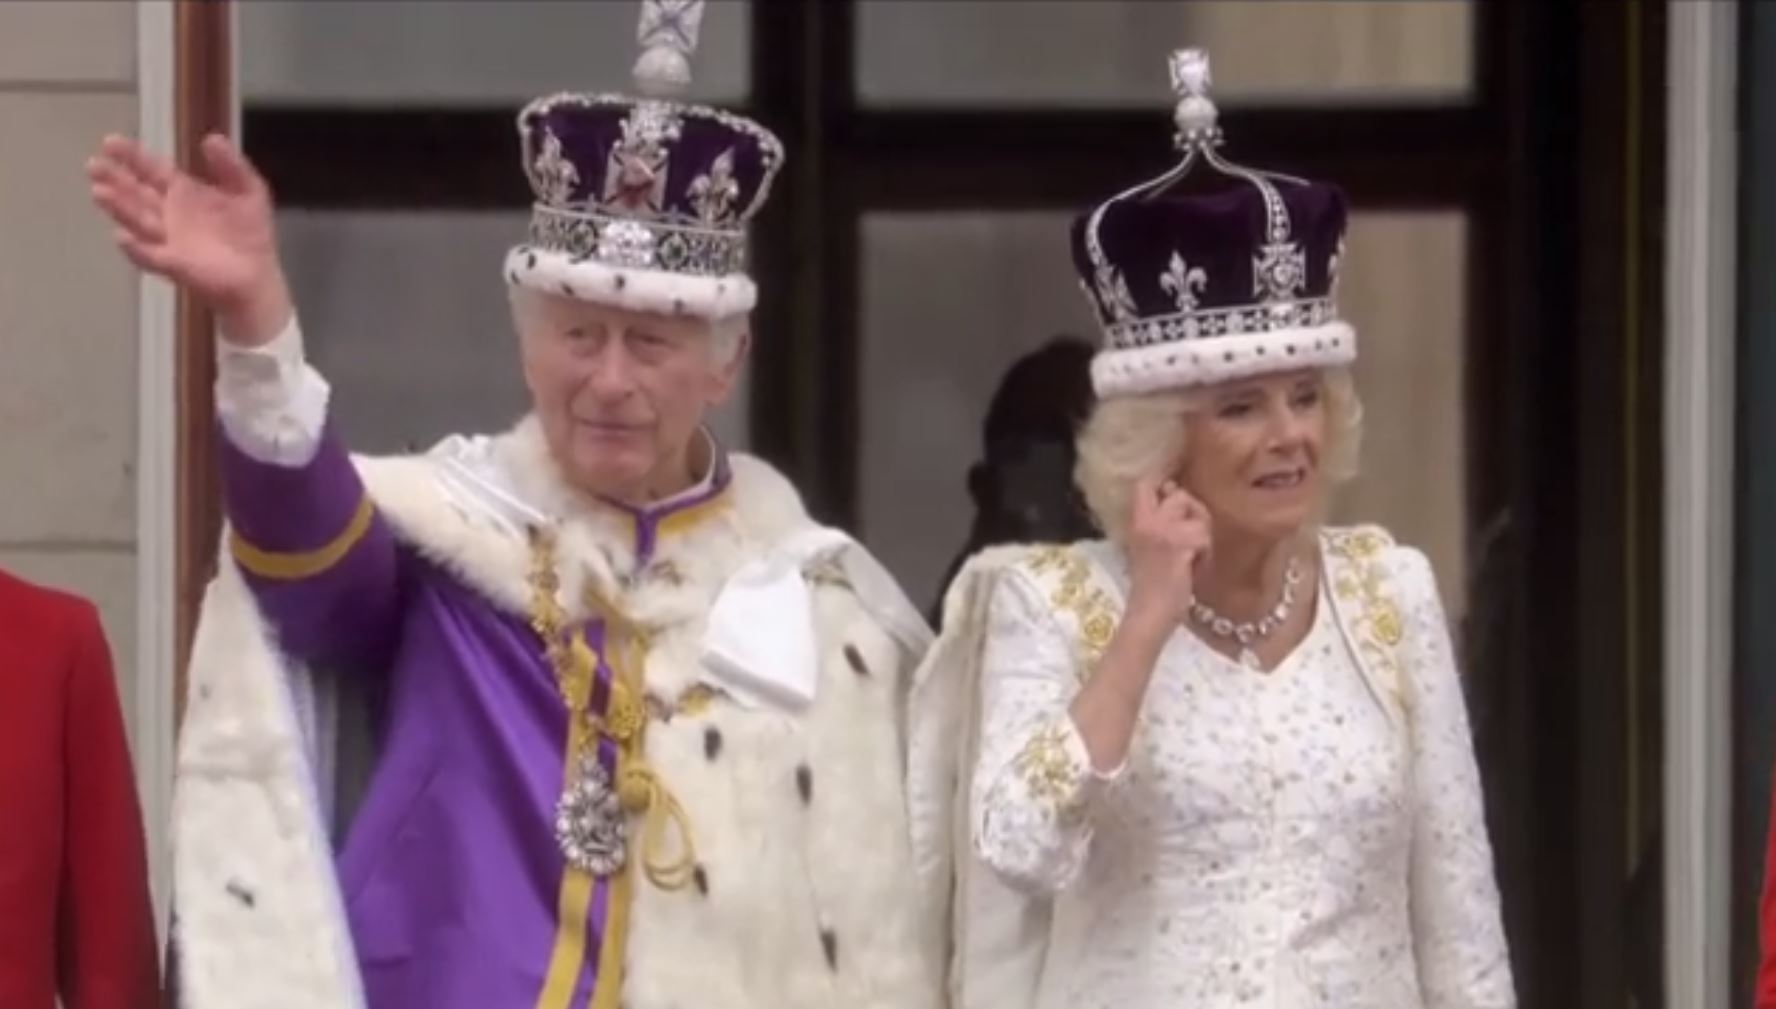 Βασιλιάς Κάρολος: Ο χαιρετισμός του στο μπαλκόνι - Όλη η βασιλική οικογένεια μαζί και... ο Χάρι χώρια